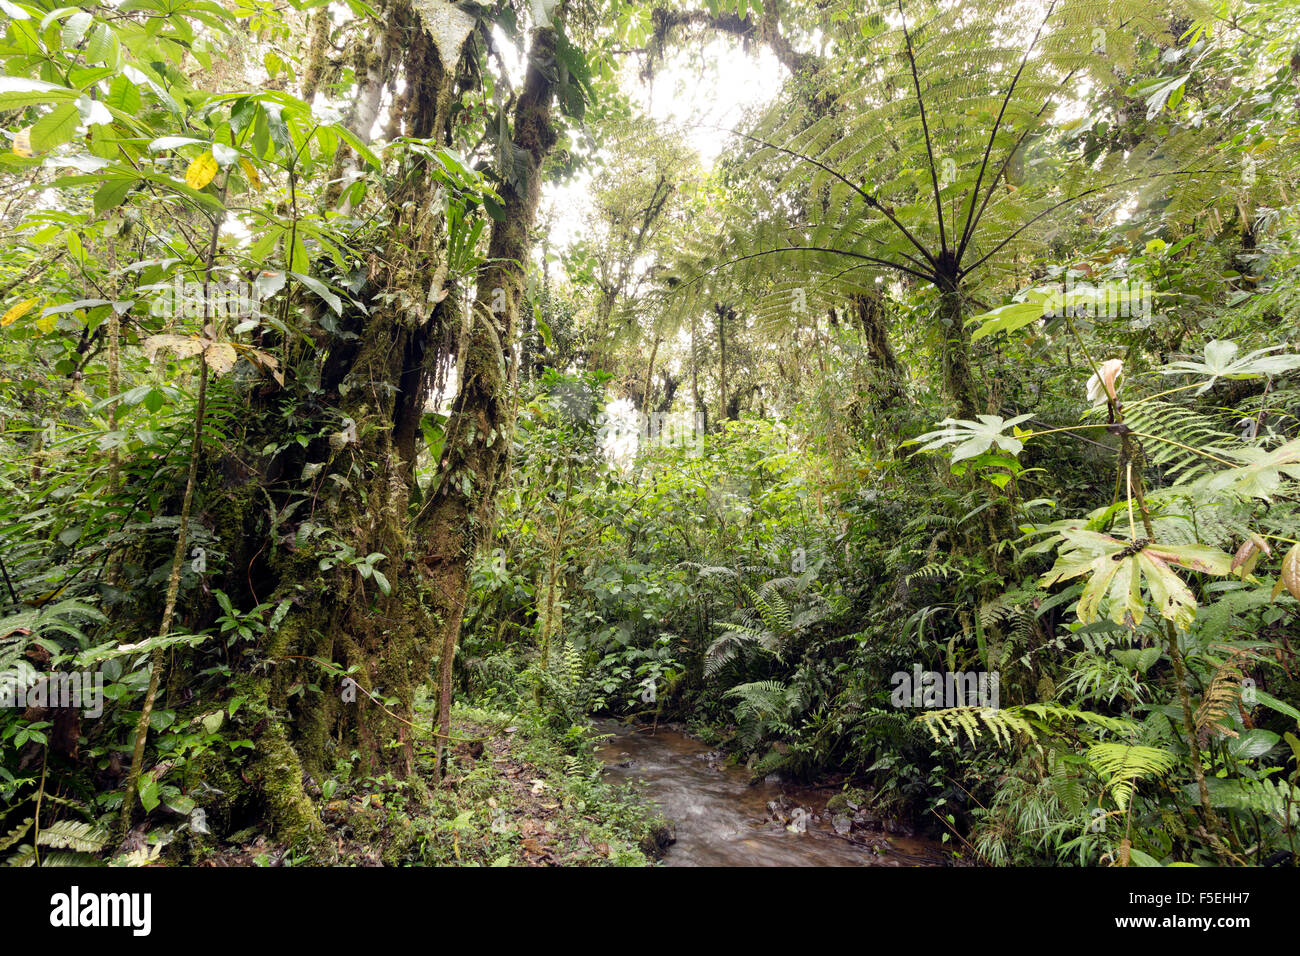 Cloudforest humide à 2 200 m d'altitude sur le versant amazonien de la Cordillère des Andes en Equateur, fougère arborescente et ruisseau. Banque D'Images